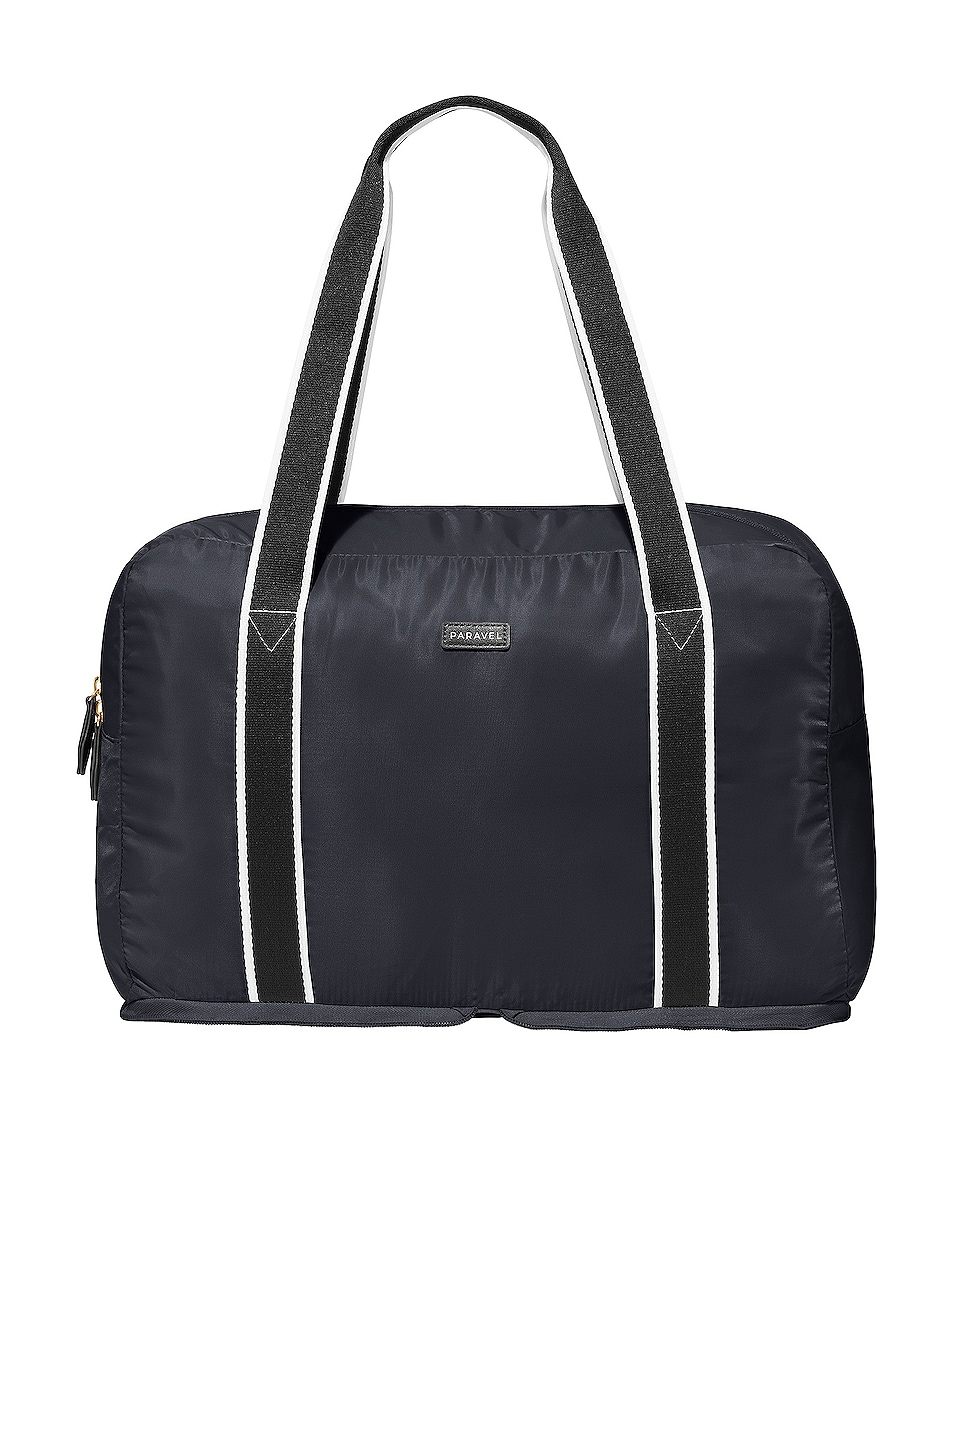 Fold-Up Bag in Black